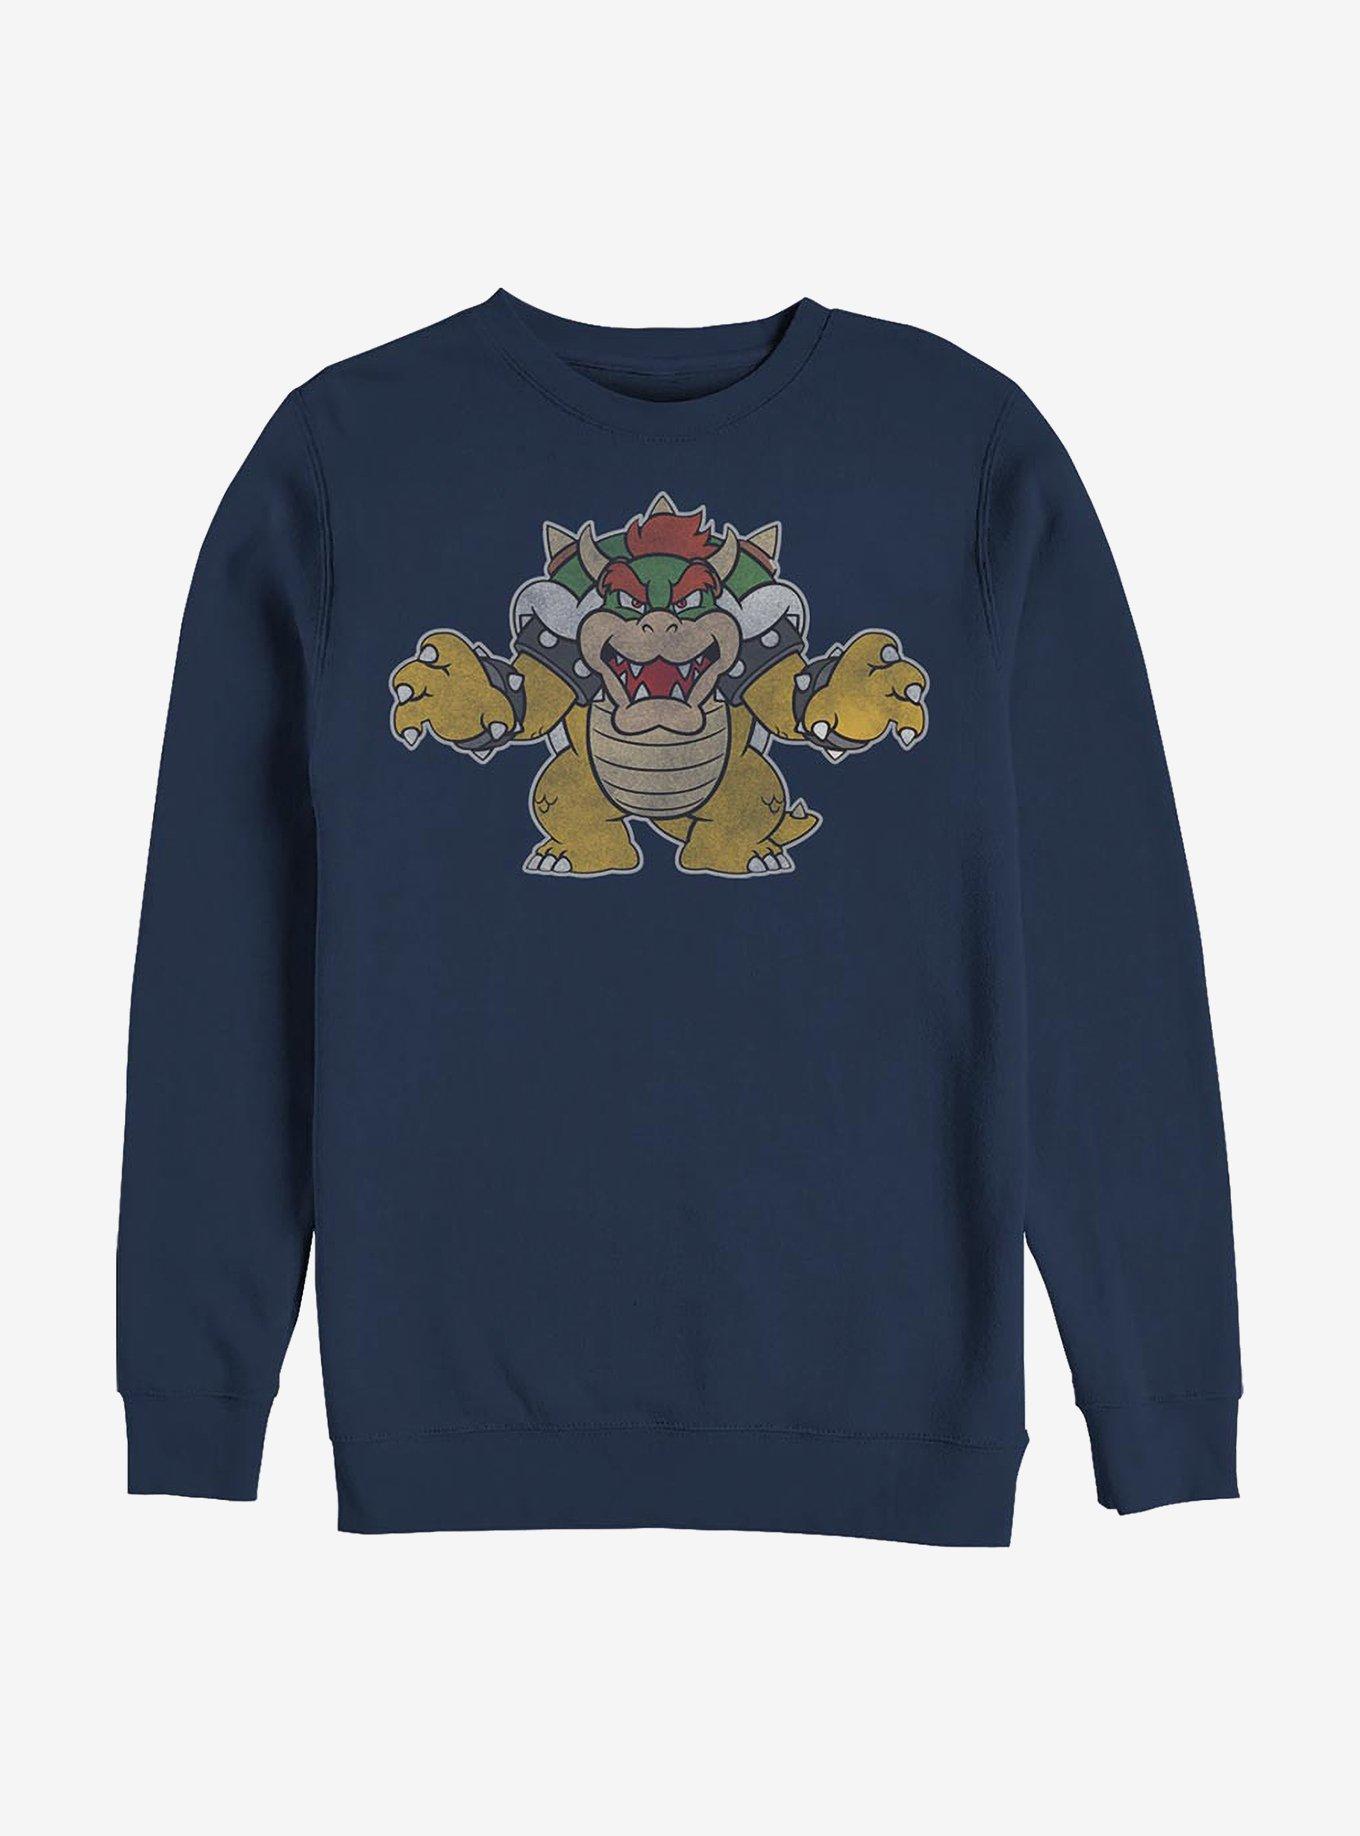 Nintendo Mario Just Bowser Crew Sweatshirt, NAVY, hi-res